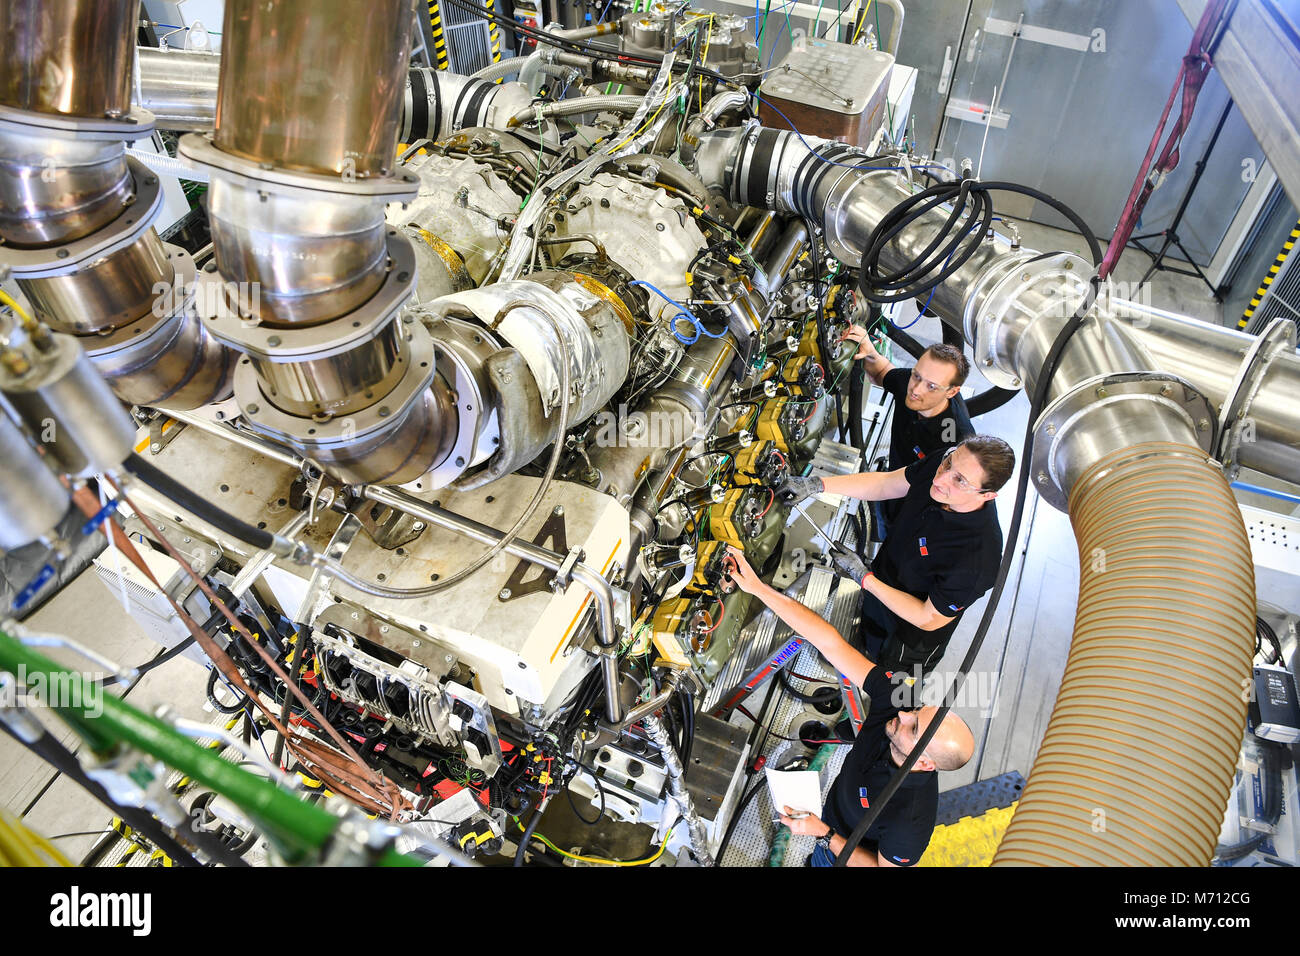 07 mars 2018, l'Allemagne, Friedrichshafen : Un technicien et deux  ingénieurs travaillent sur un moteur à gaz de MTU à Rolls-Royce un MTU banc  d'essai. Le moteur à gaz 16 cylindres de